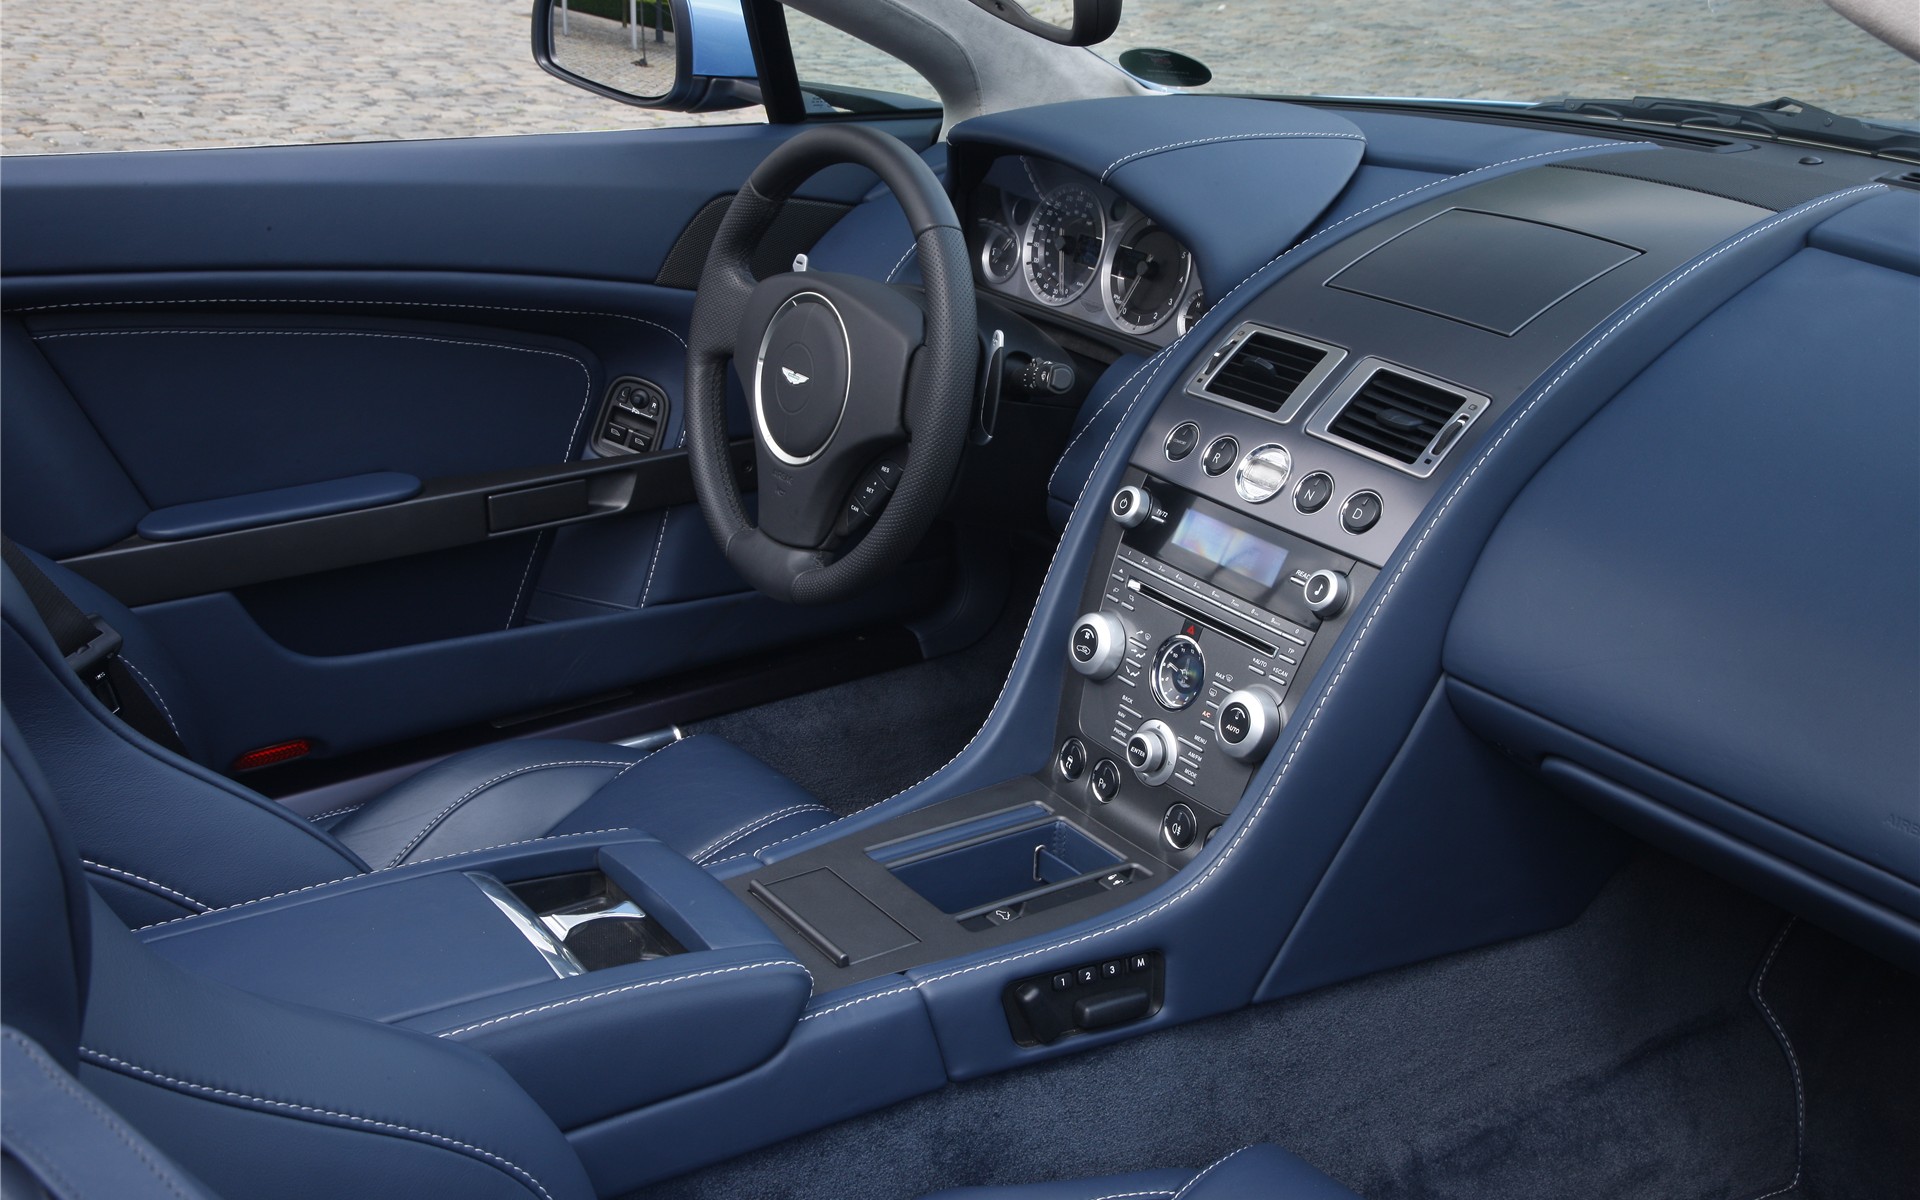 Download HQ blue leather interior Aston Martin wallpaper / 1920x1200